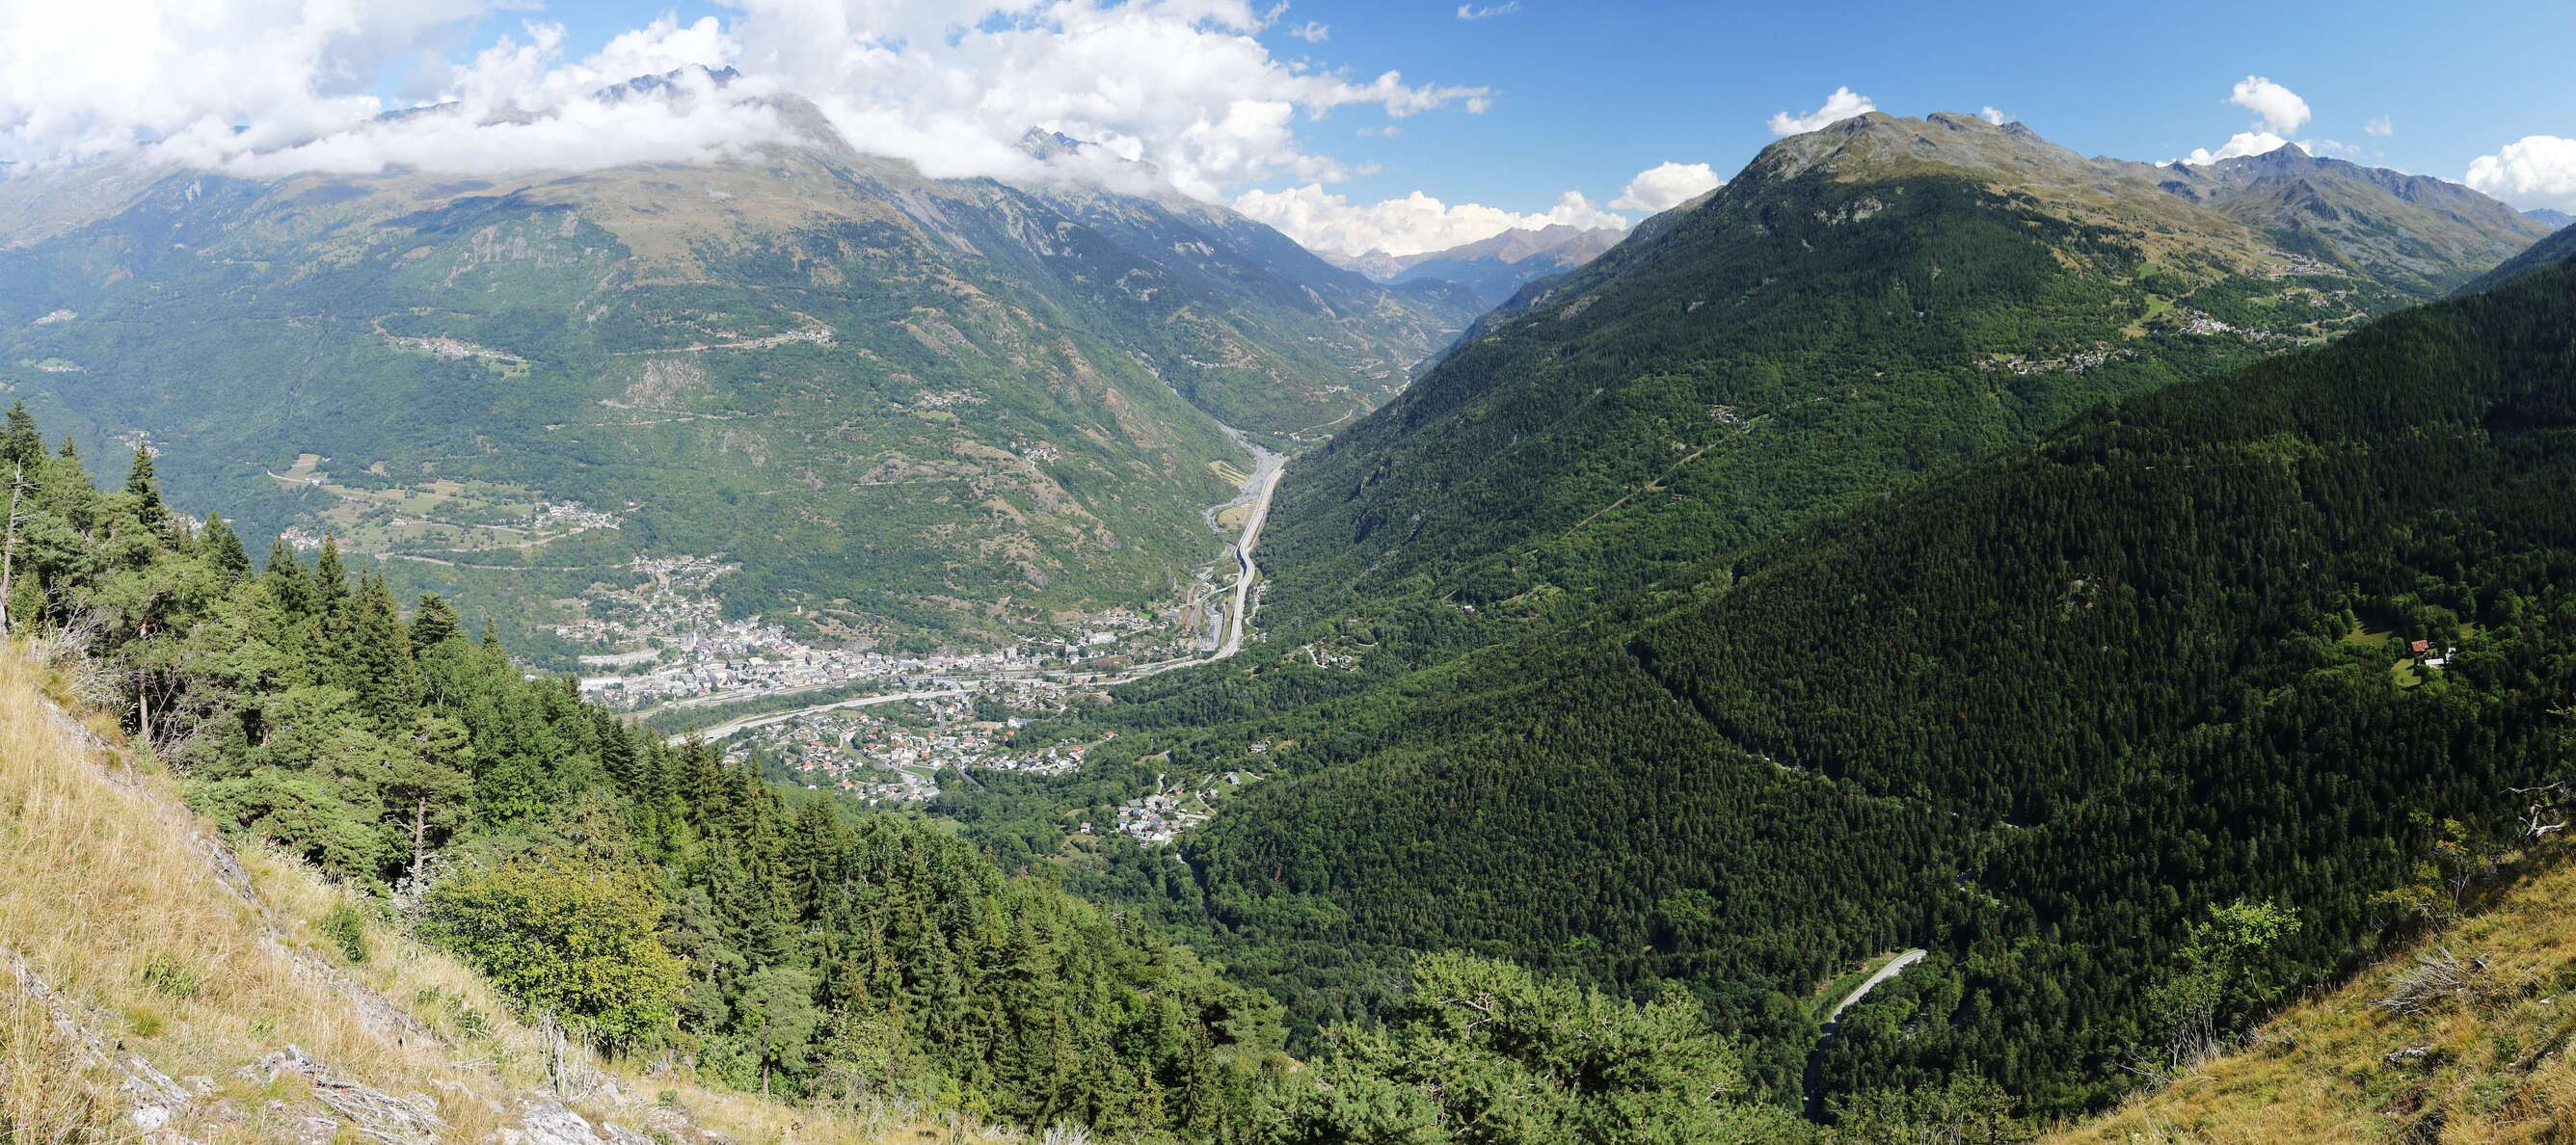 Haute Maurienne with Saint-Michel-de-Maurienne